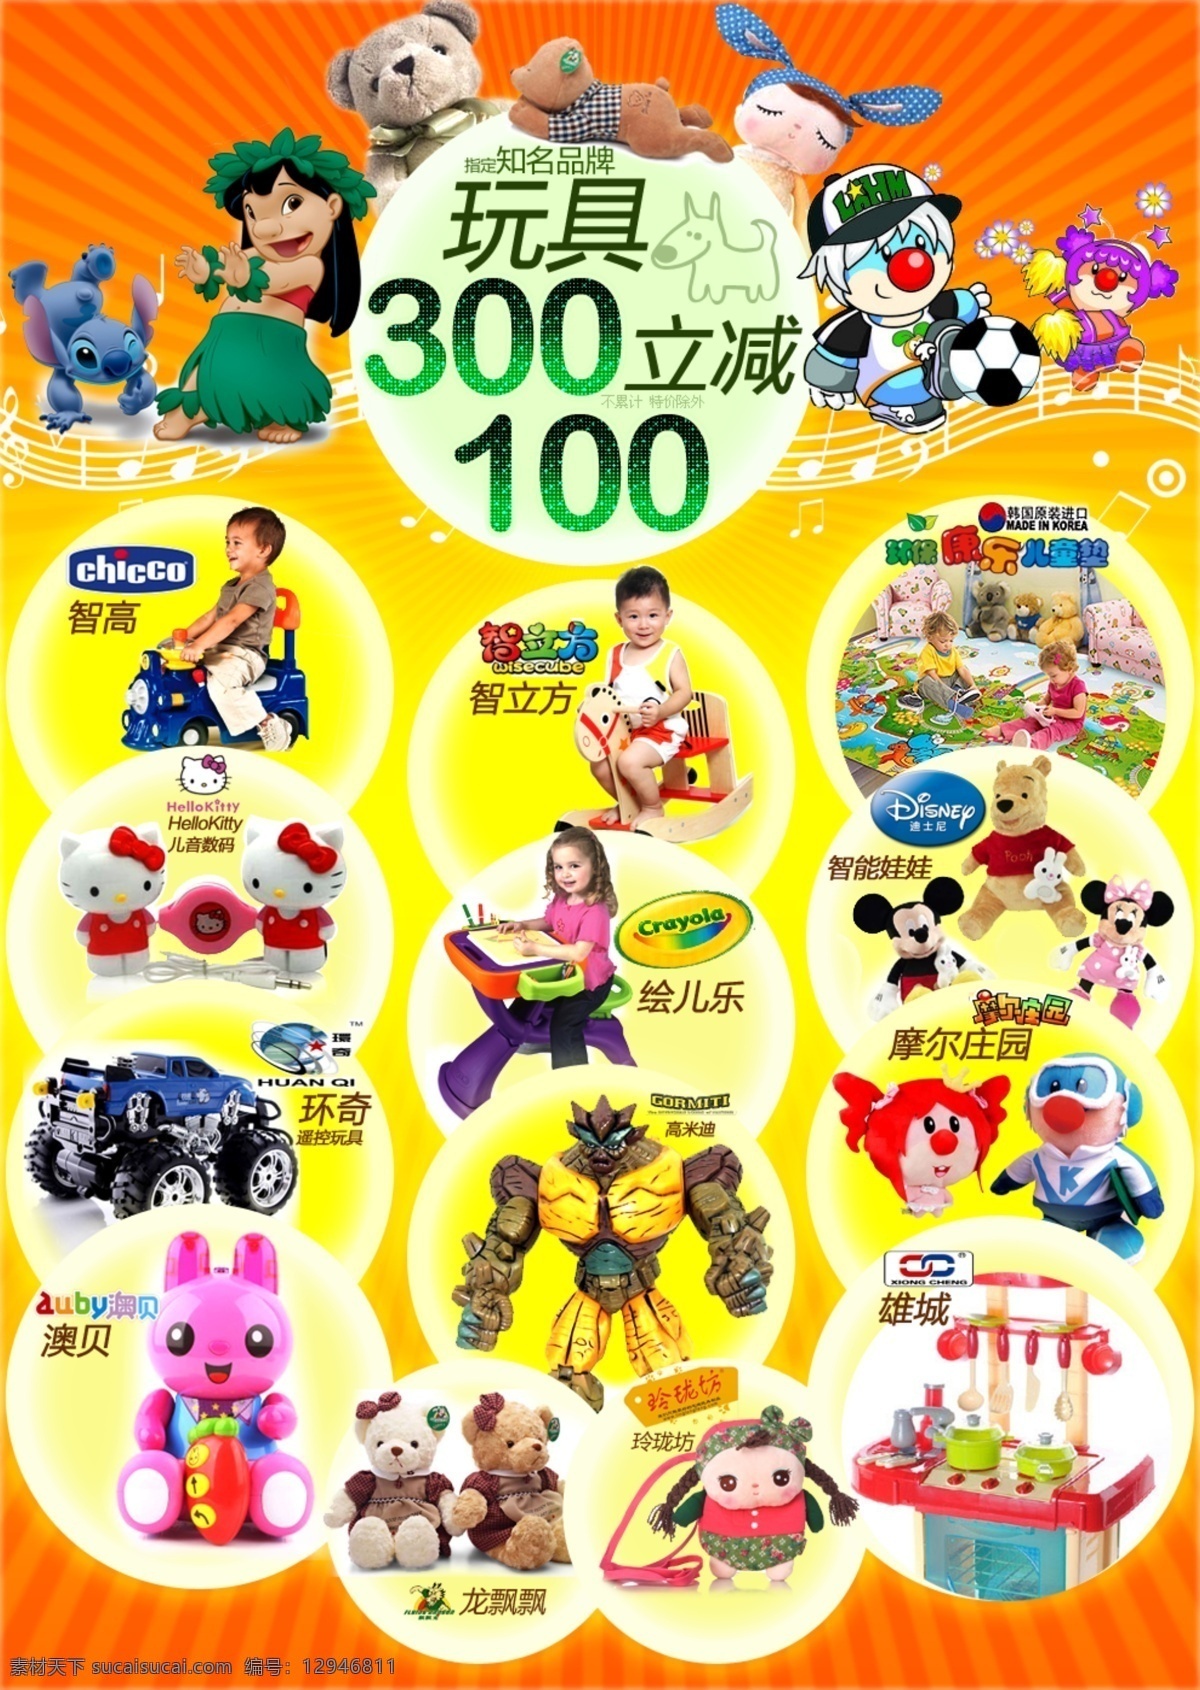 品牌 玩具 促销 专题 玩具促销 宝宝玩具 卡通人物 广告设计模板 源文件